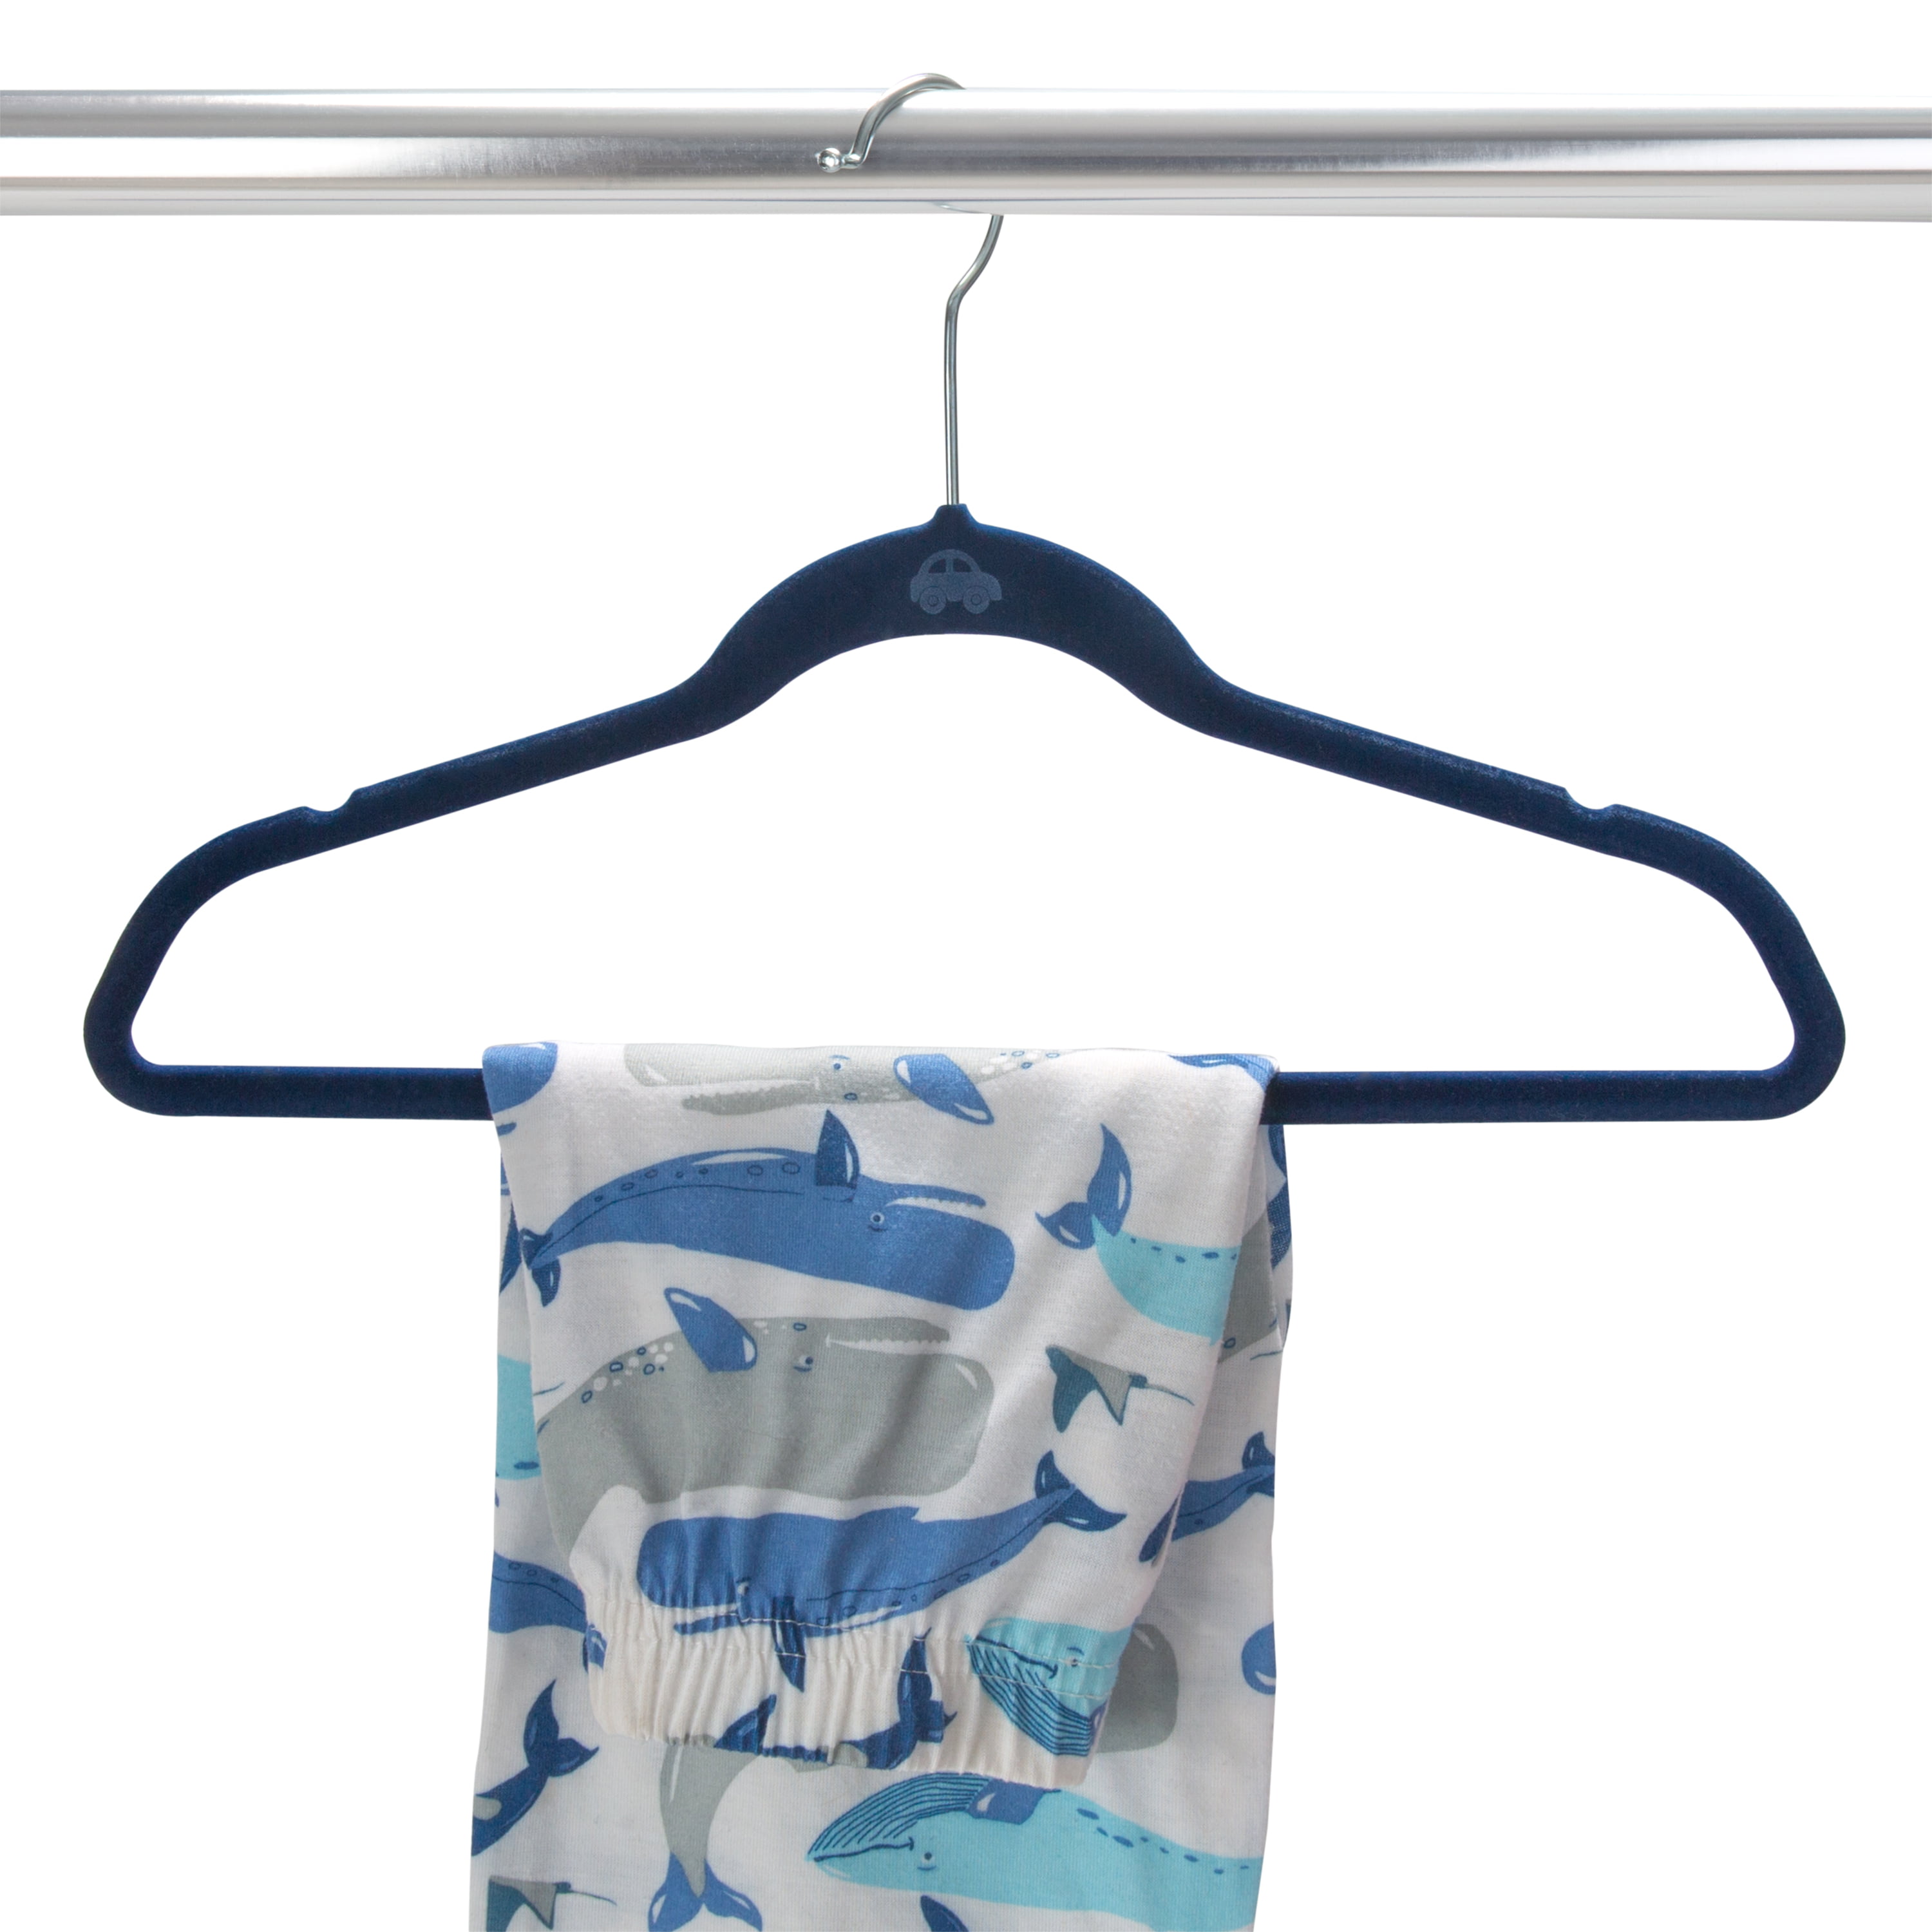 Children's Slimline (No-Flock) Teal Color Hanger – Only Hangers Inc.